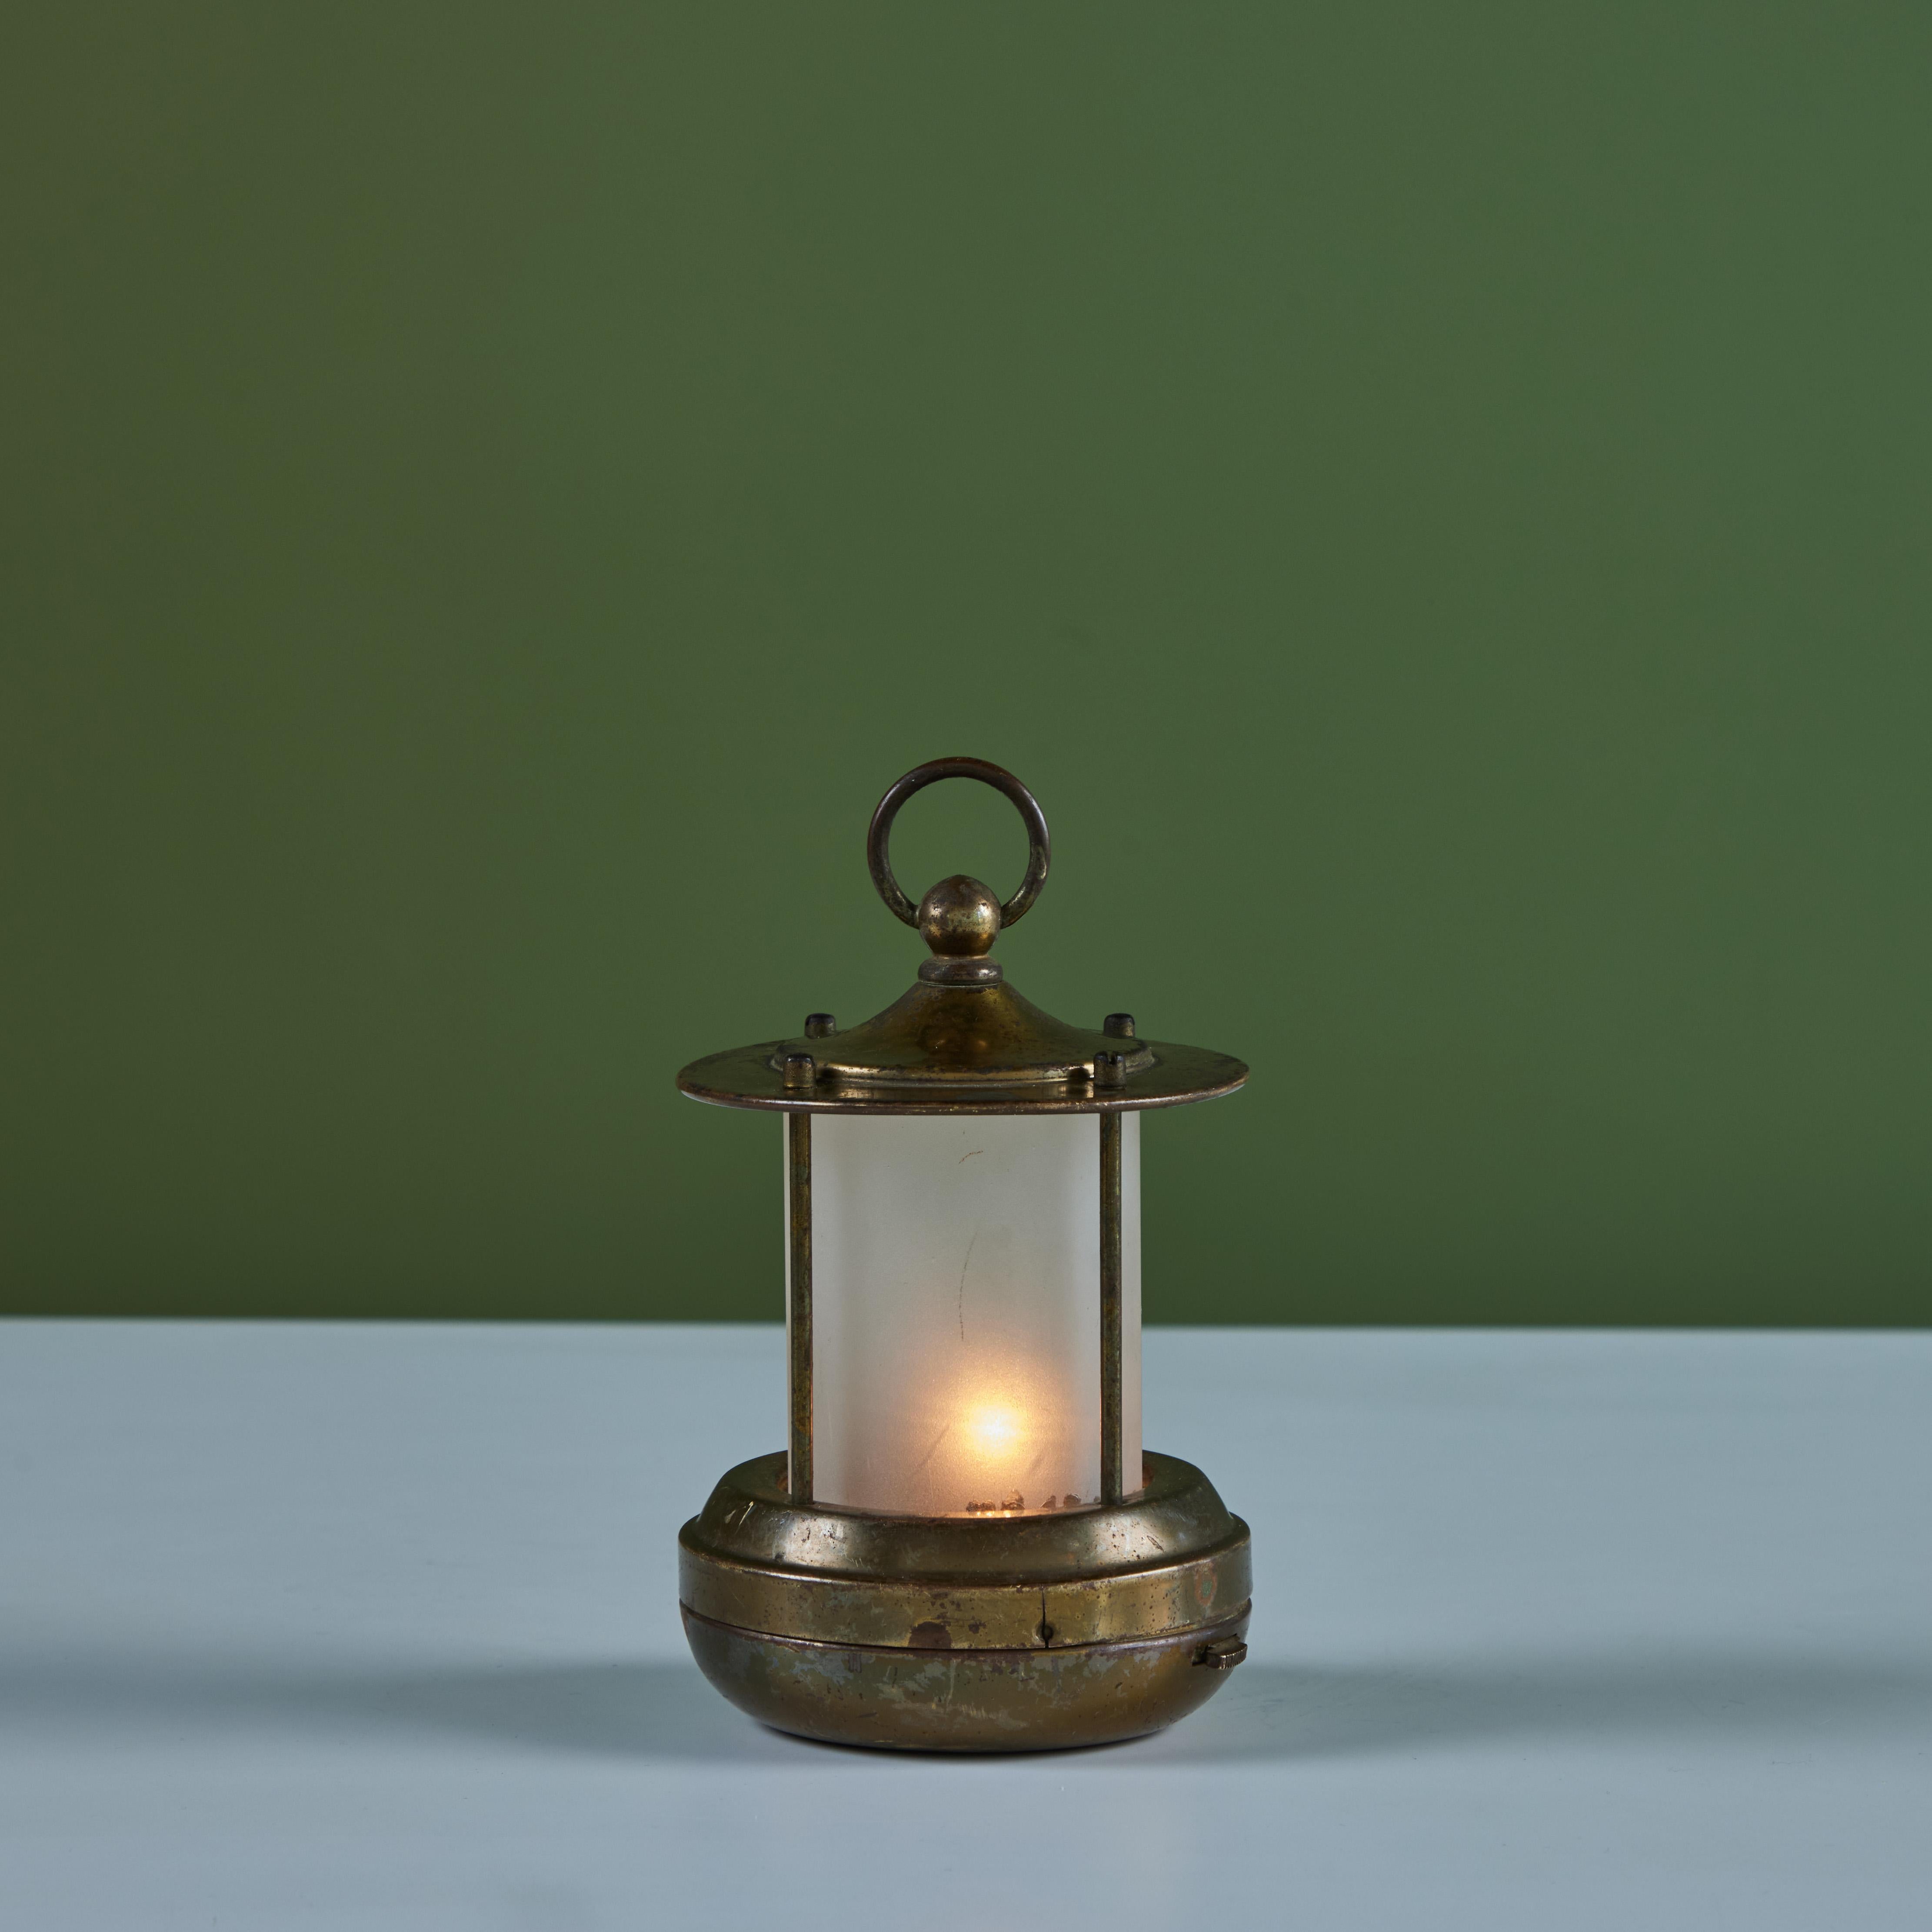 Petite lampe de table de style lanterne en laiton pour Chase, c.1930s, USA. La lampe Art déco présente un verre cylindrique en forme de cône, une base en laiton et un capuchon avec poignée. Cette lampe particulière est alimentée par deux piles C.